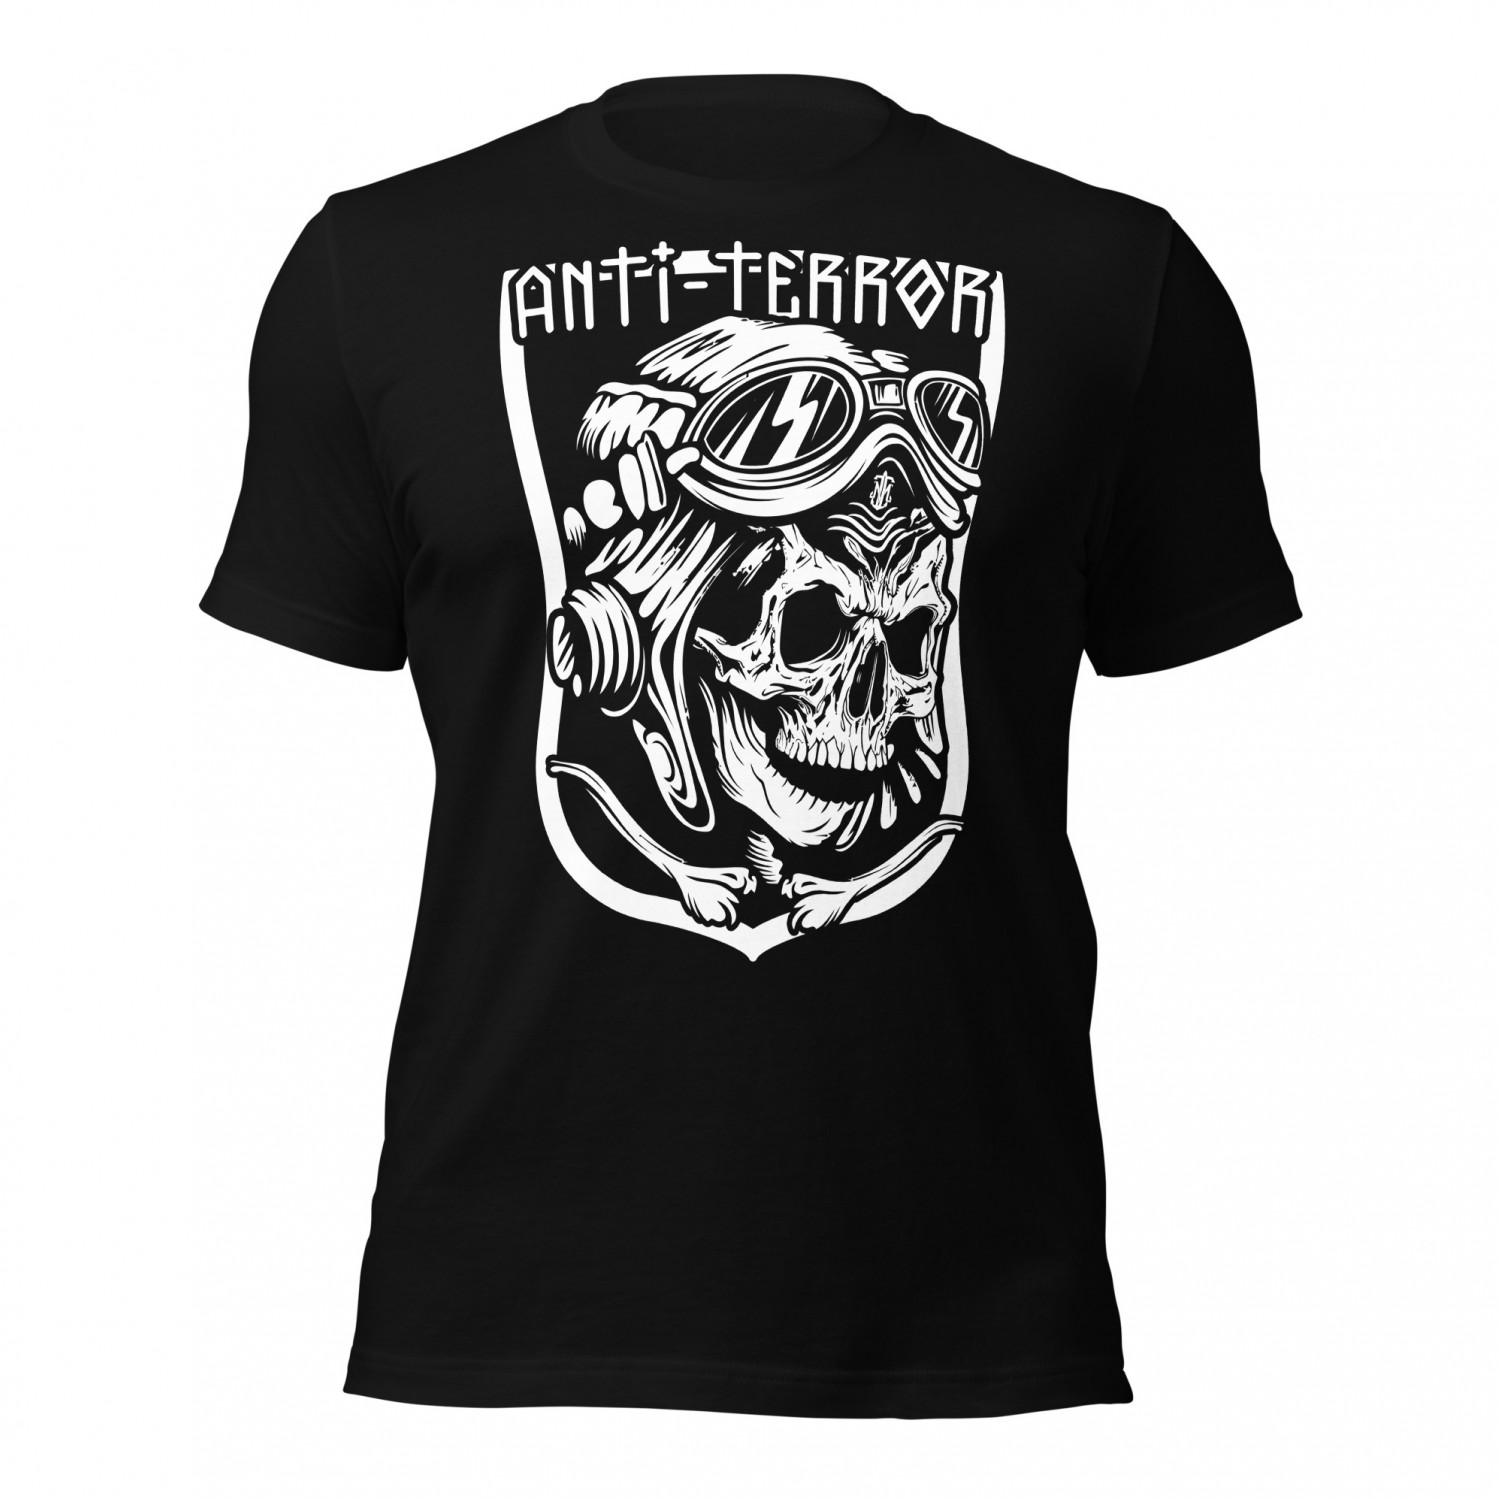 Kup koszulkę - Anty Terror